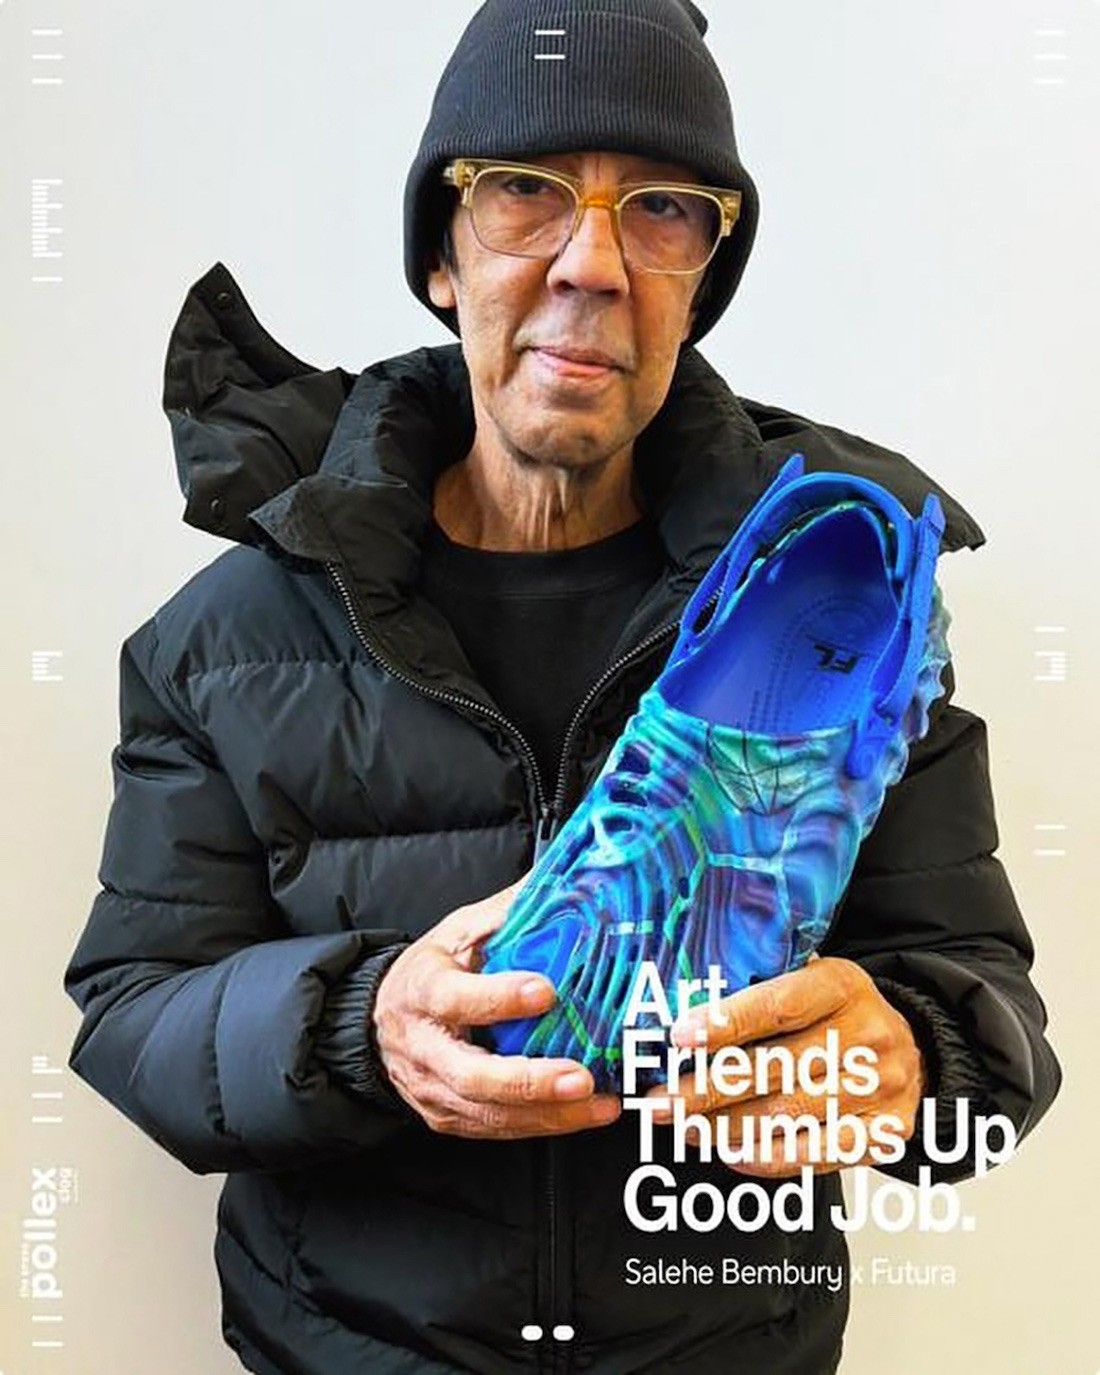 指纹鞋,洞洞鞋,Crocs,Salehe Bembury,F  涂鸦大师 Futura 要跟「Crocs 指纹鞋」联名了！